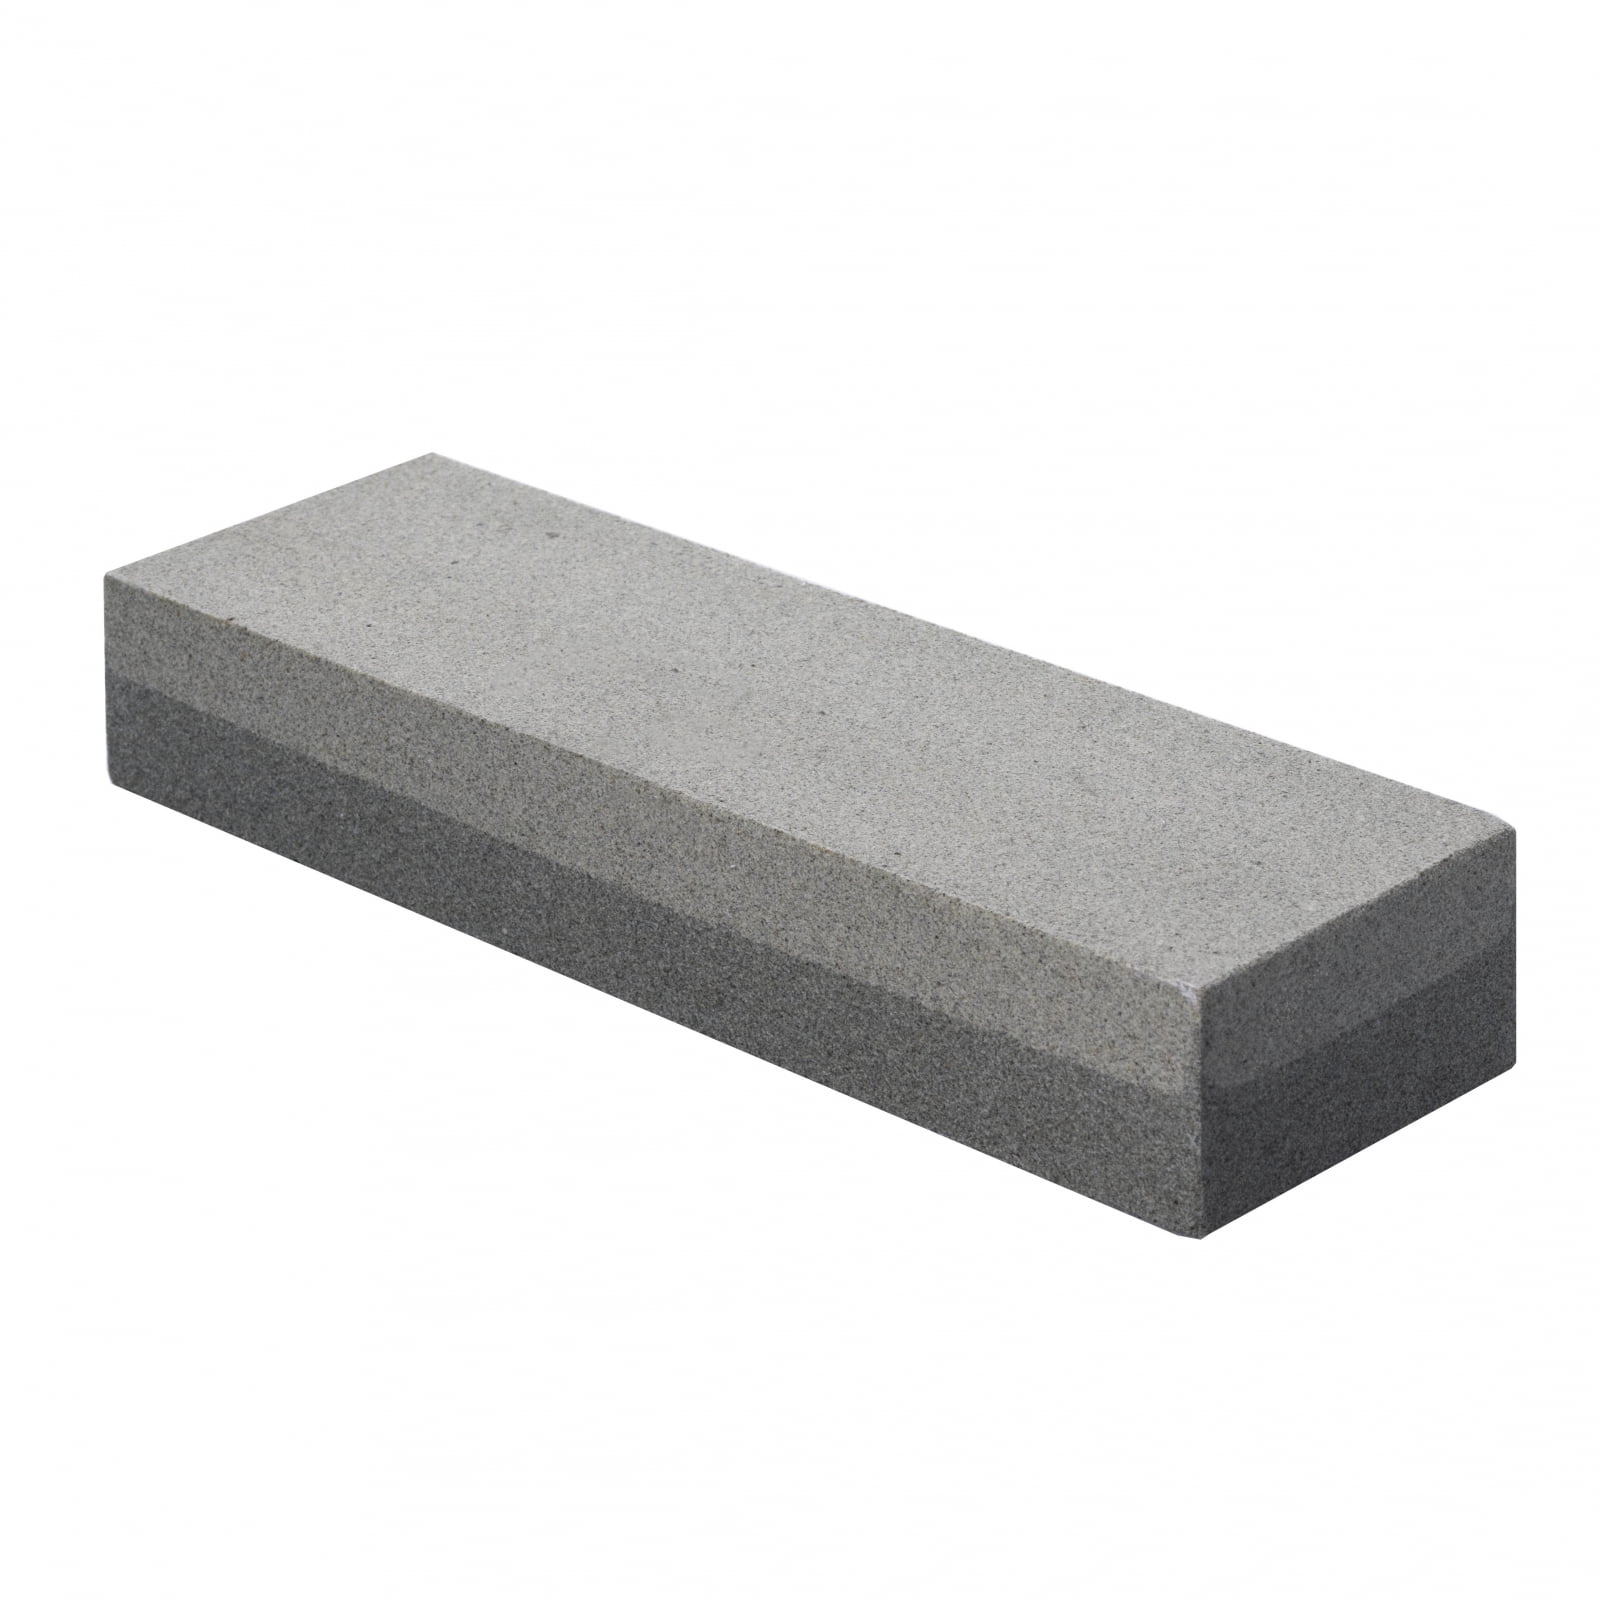 Gray Sharpening Stone 20-511-310 